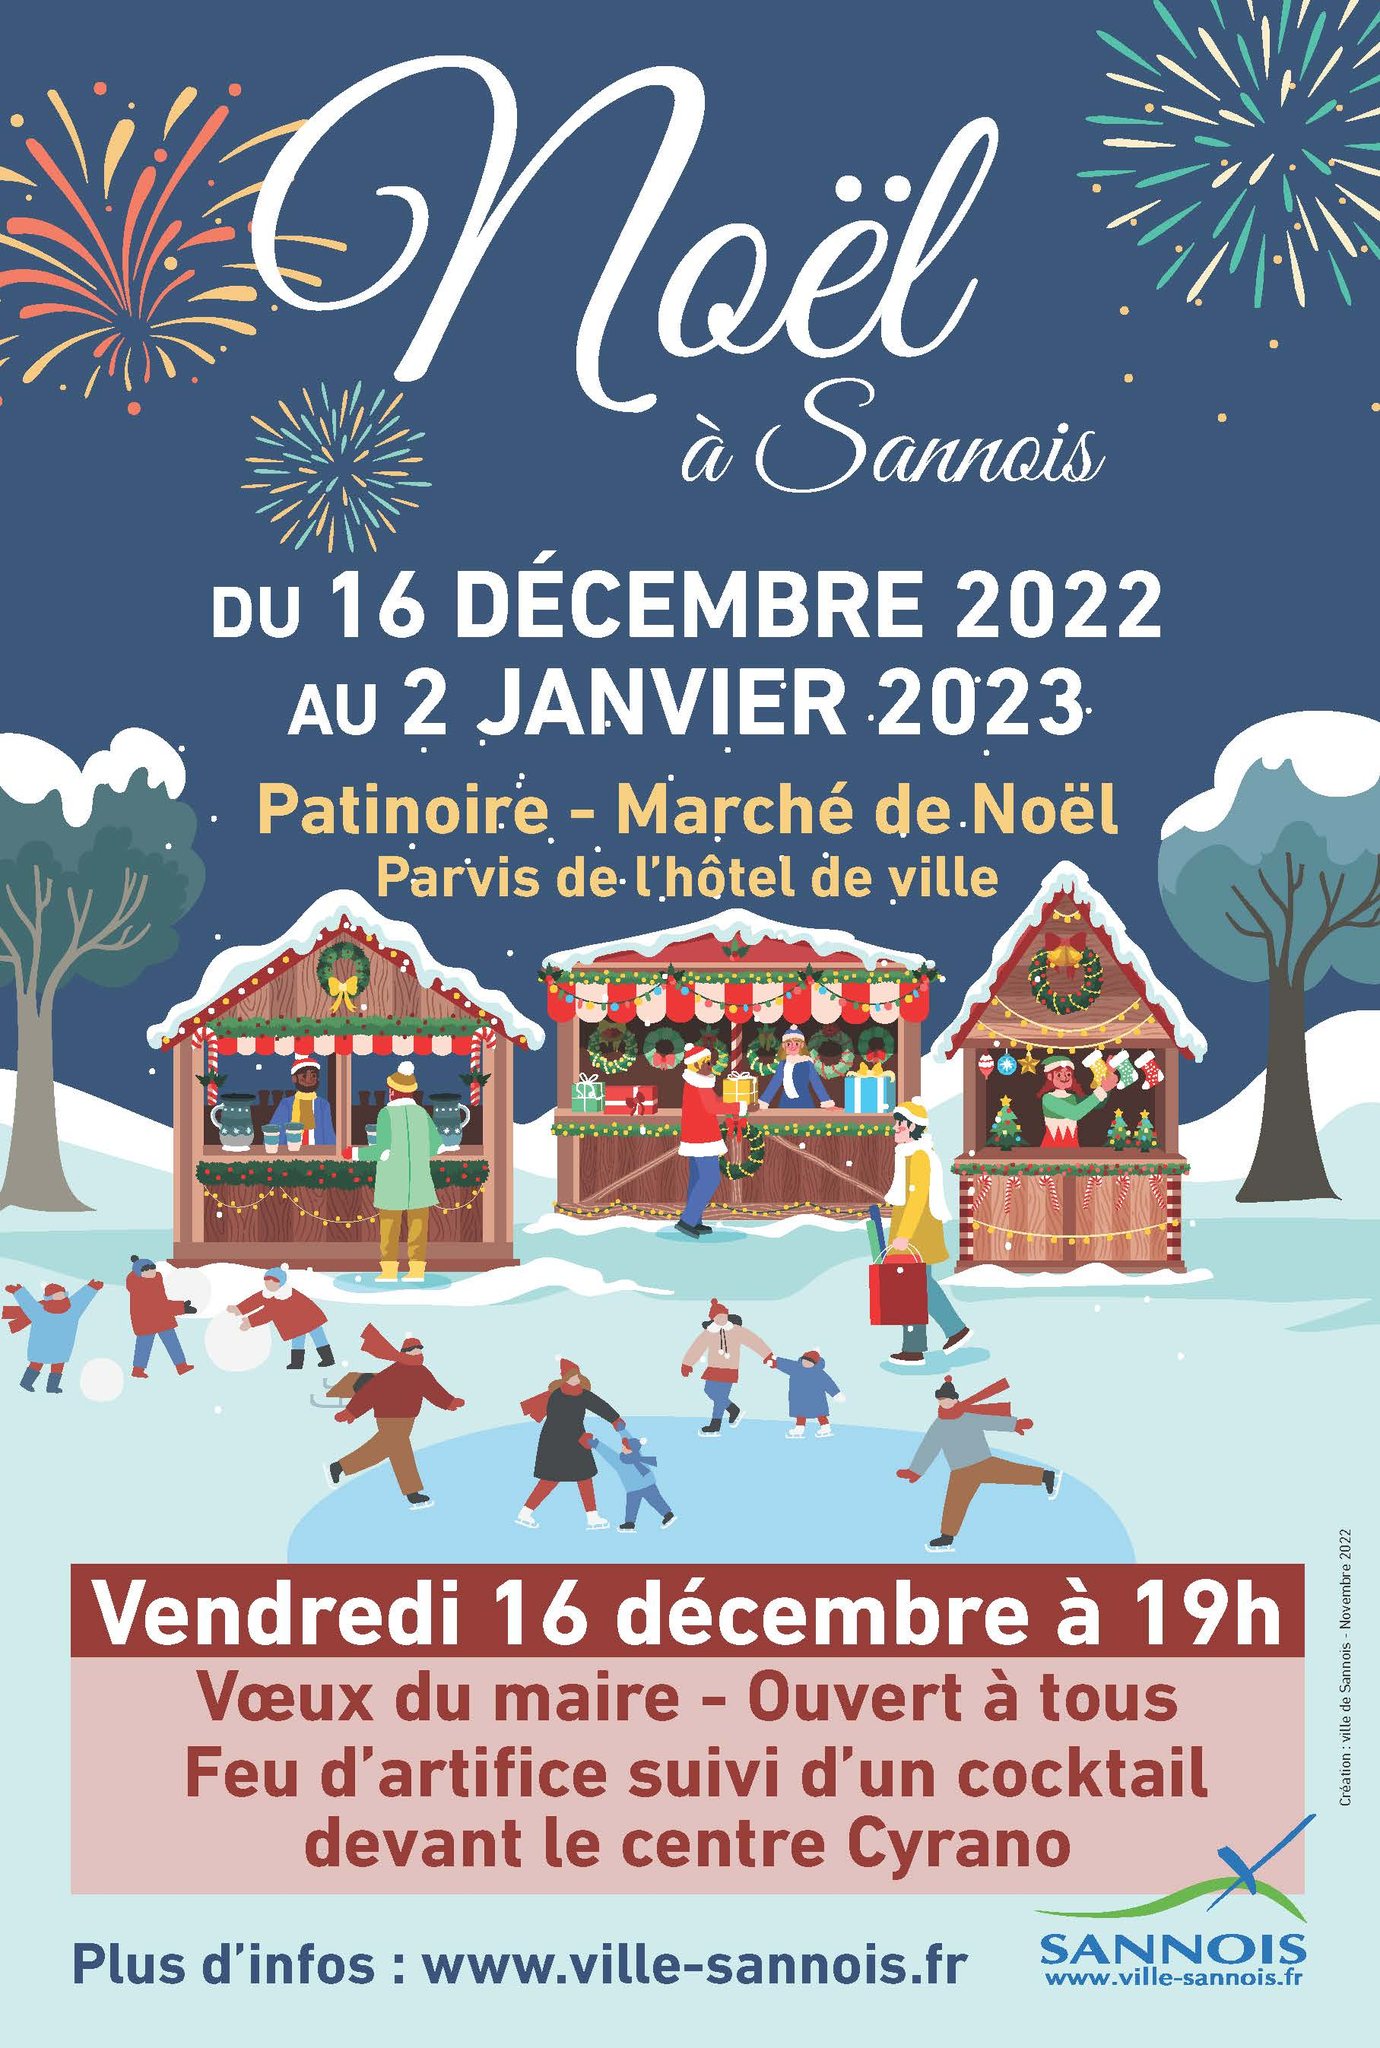 Festivités Noël 2022 - Sannois